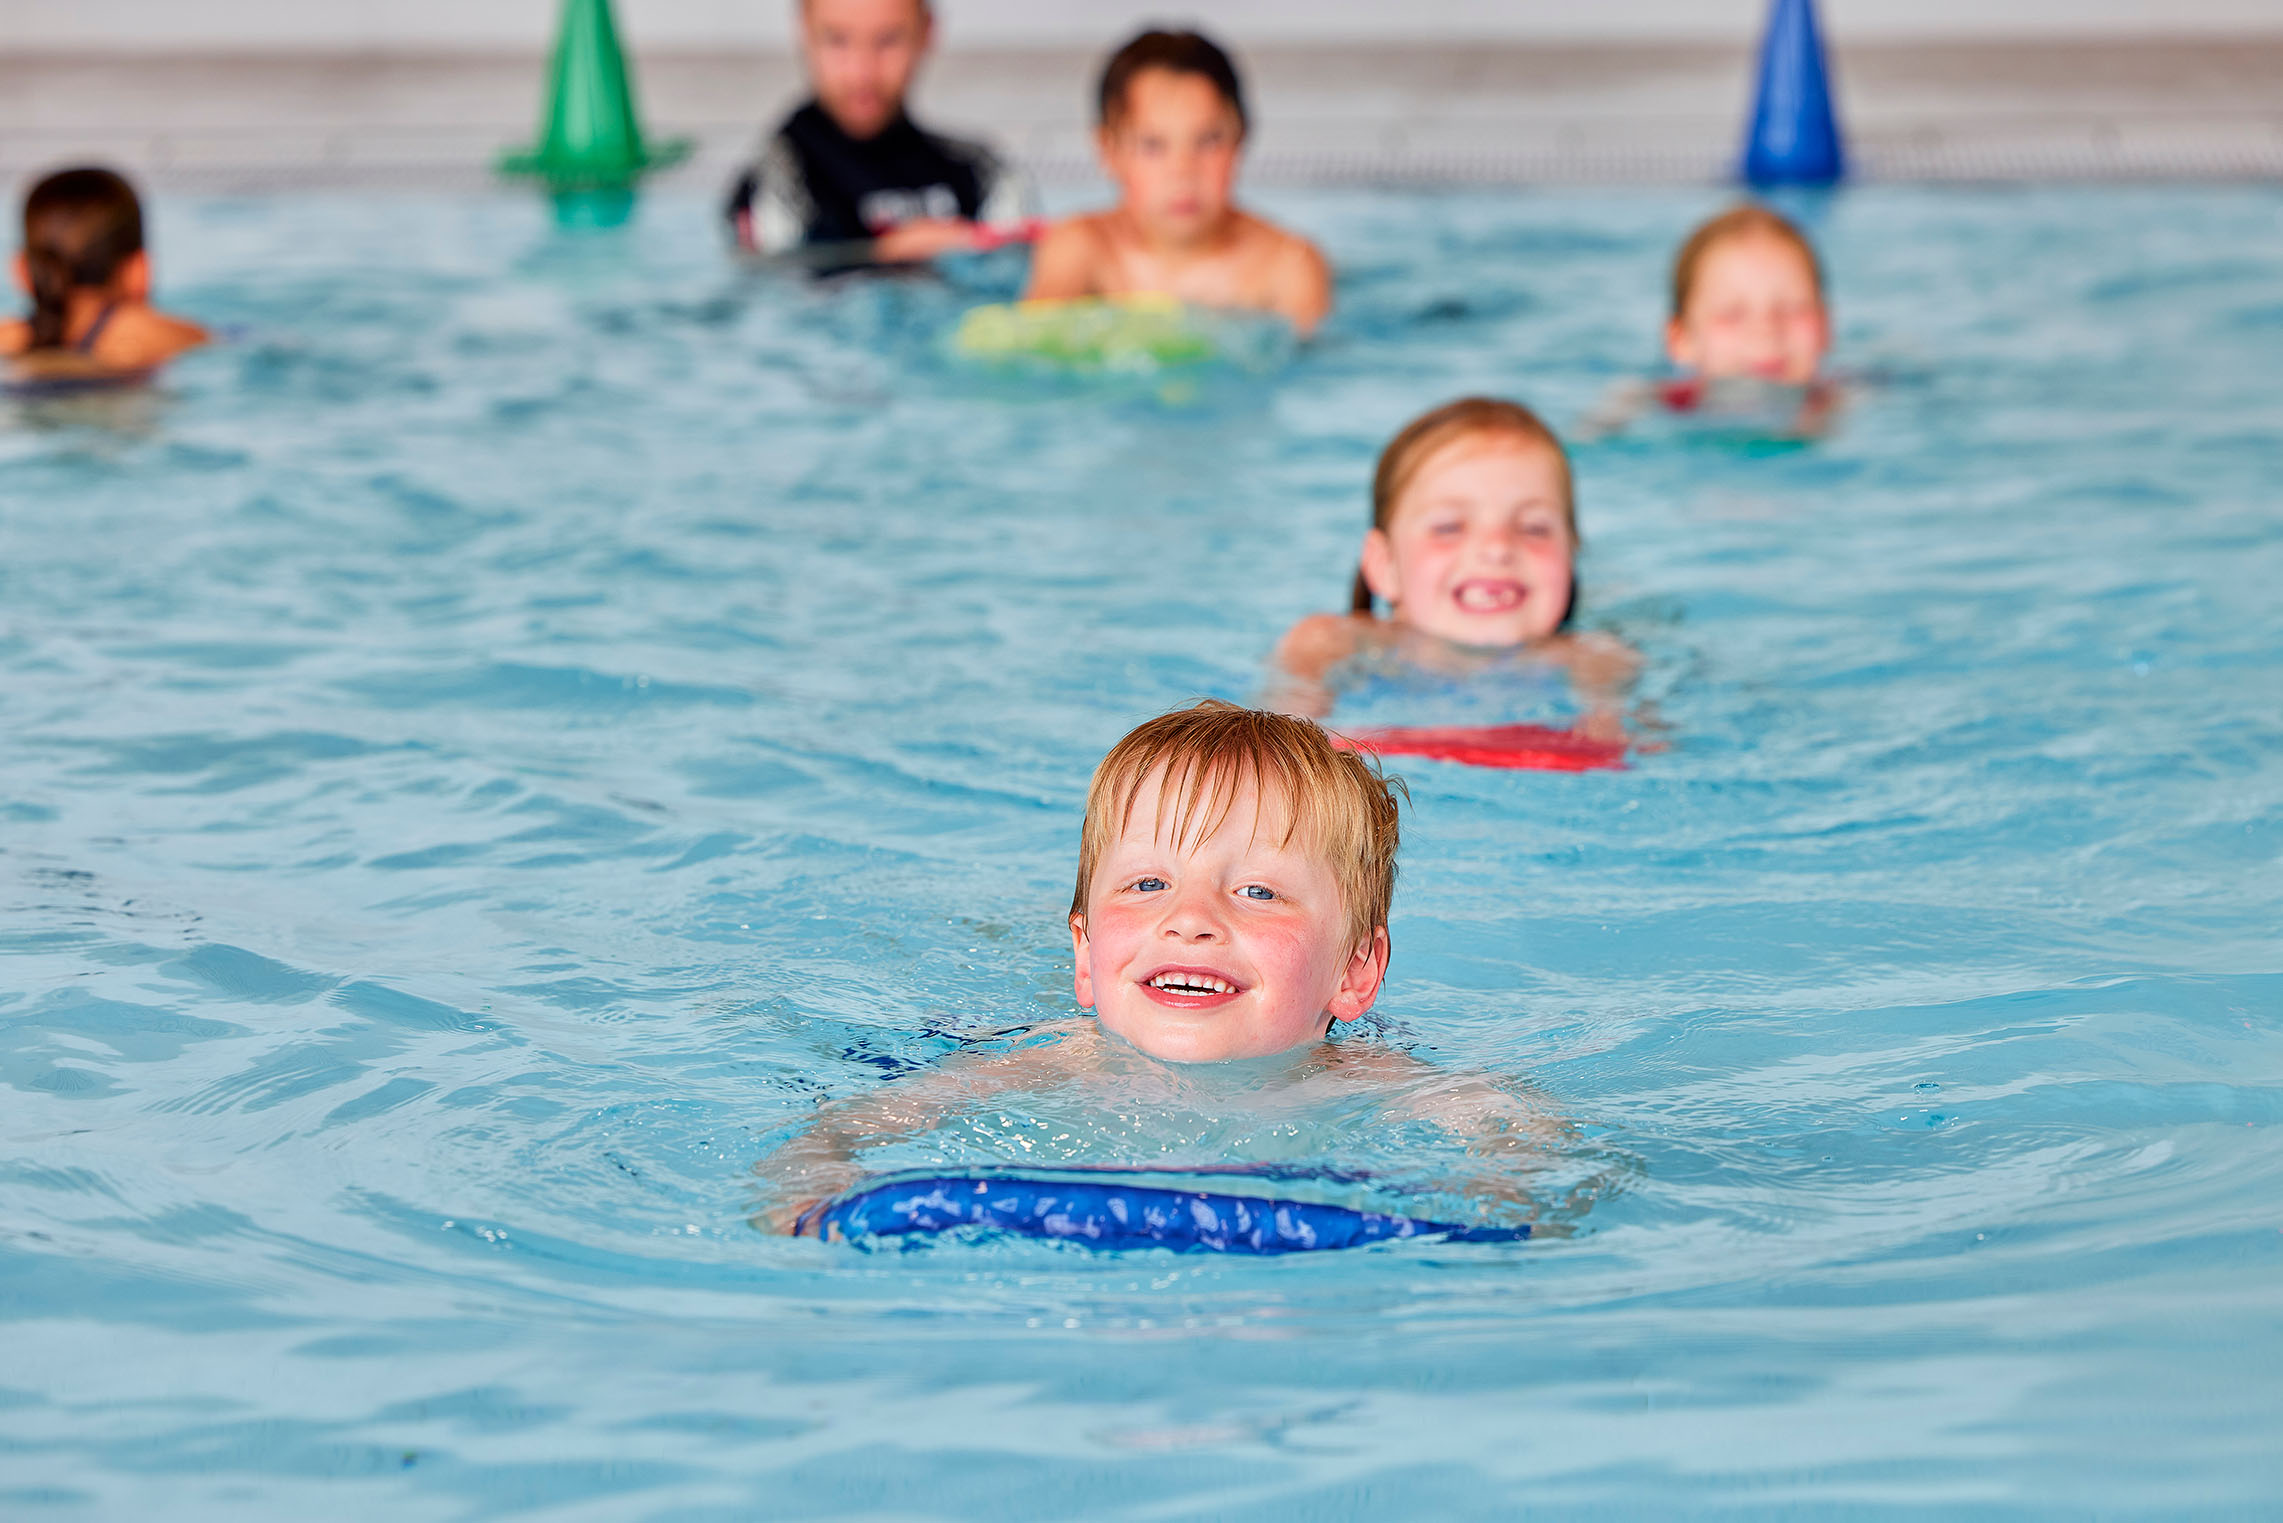 Kinderen zwemmen heel trots zonder vestje in het diepe water, de instructeur van Optisport kijkt op de achtergrond goedkeurend toe. 